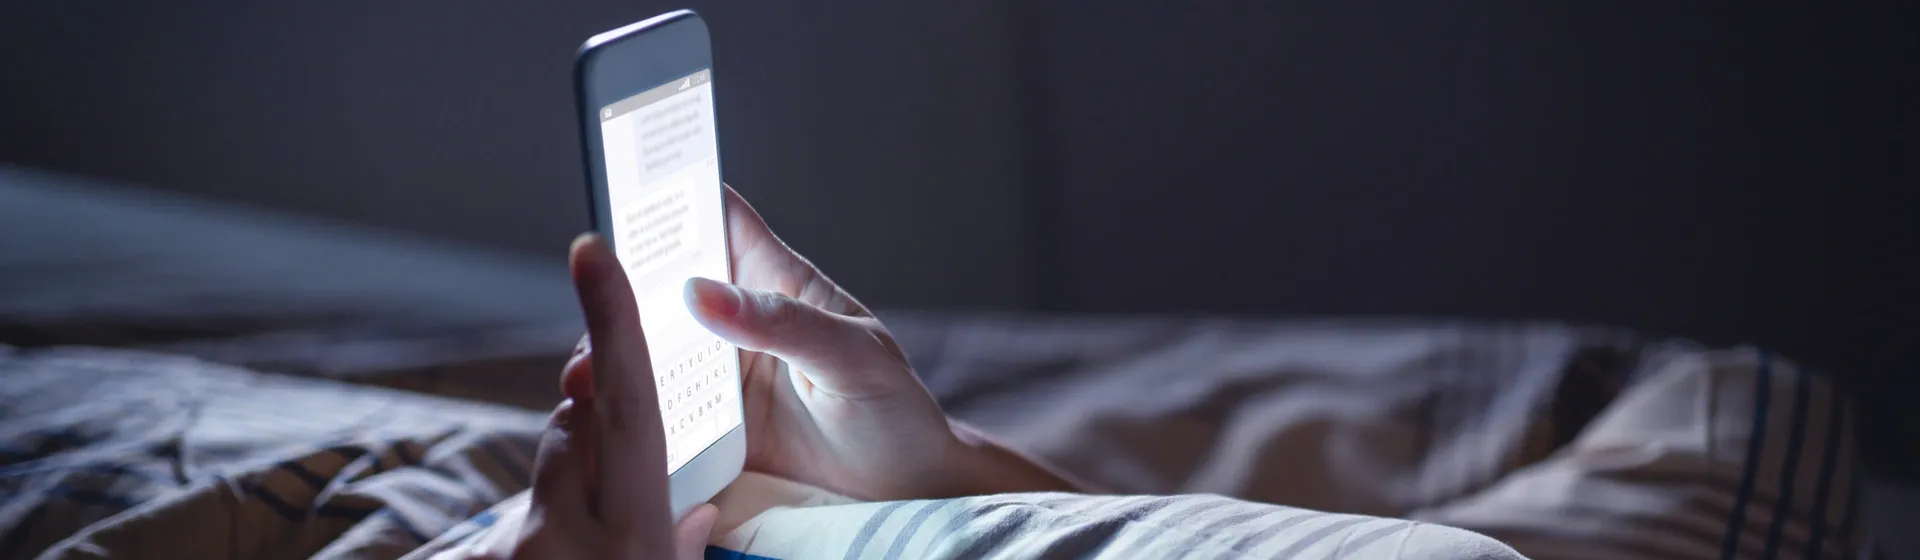 Mulher usa celular deitada na cama com luzes apagadas e apenas a tela do aparelho acesa 